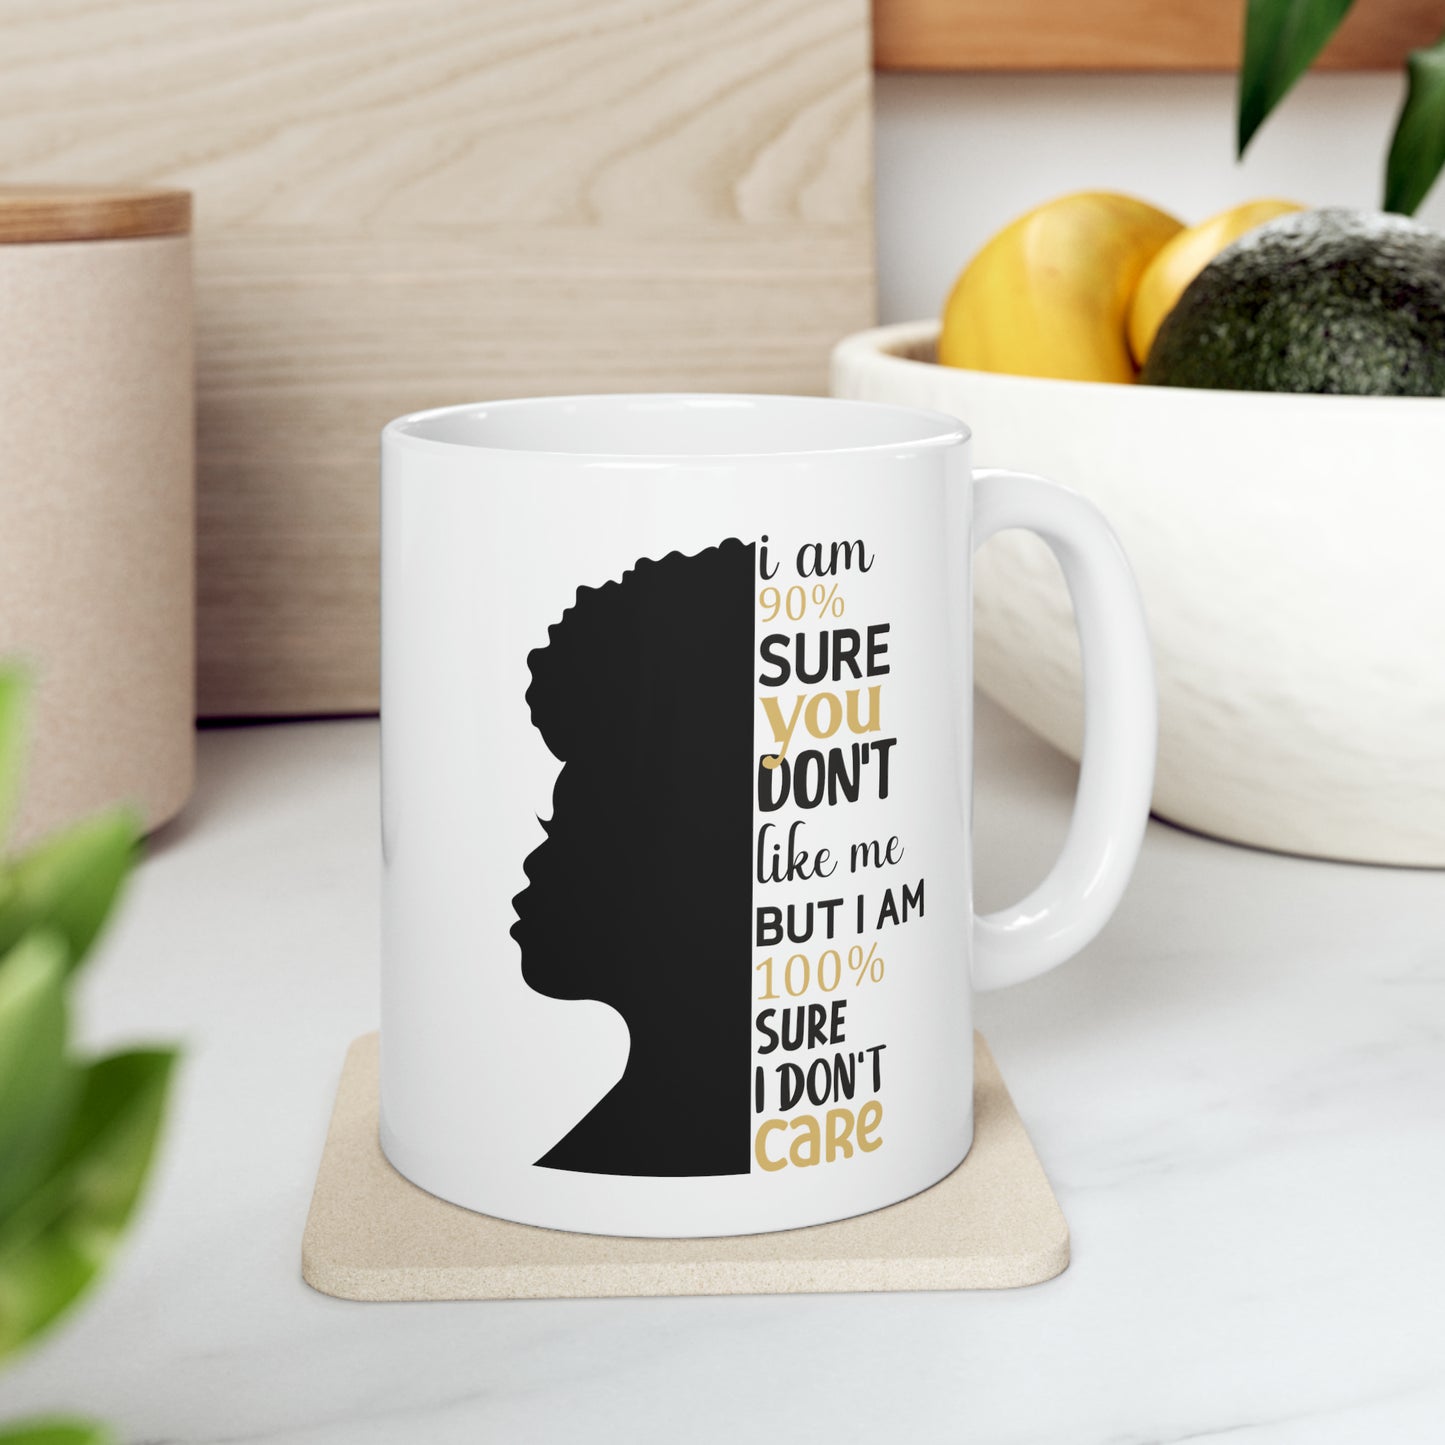 I Don't Care Ceramic Mug, 11oz | Gift For Her